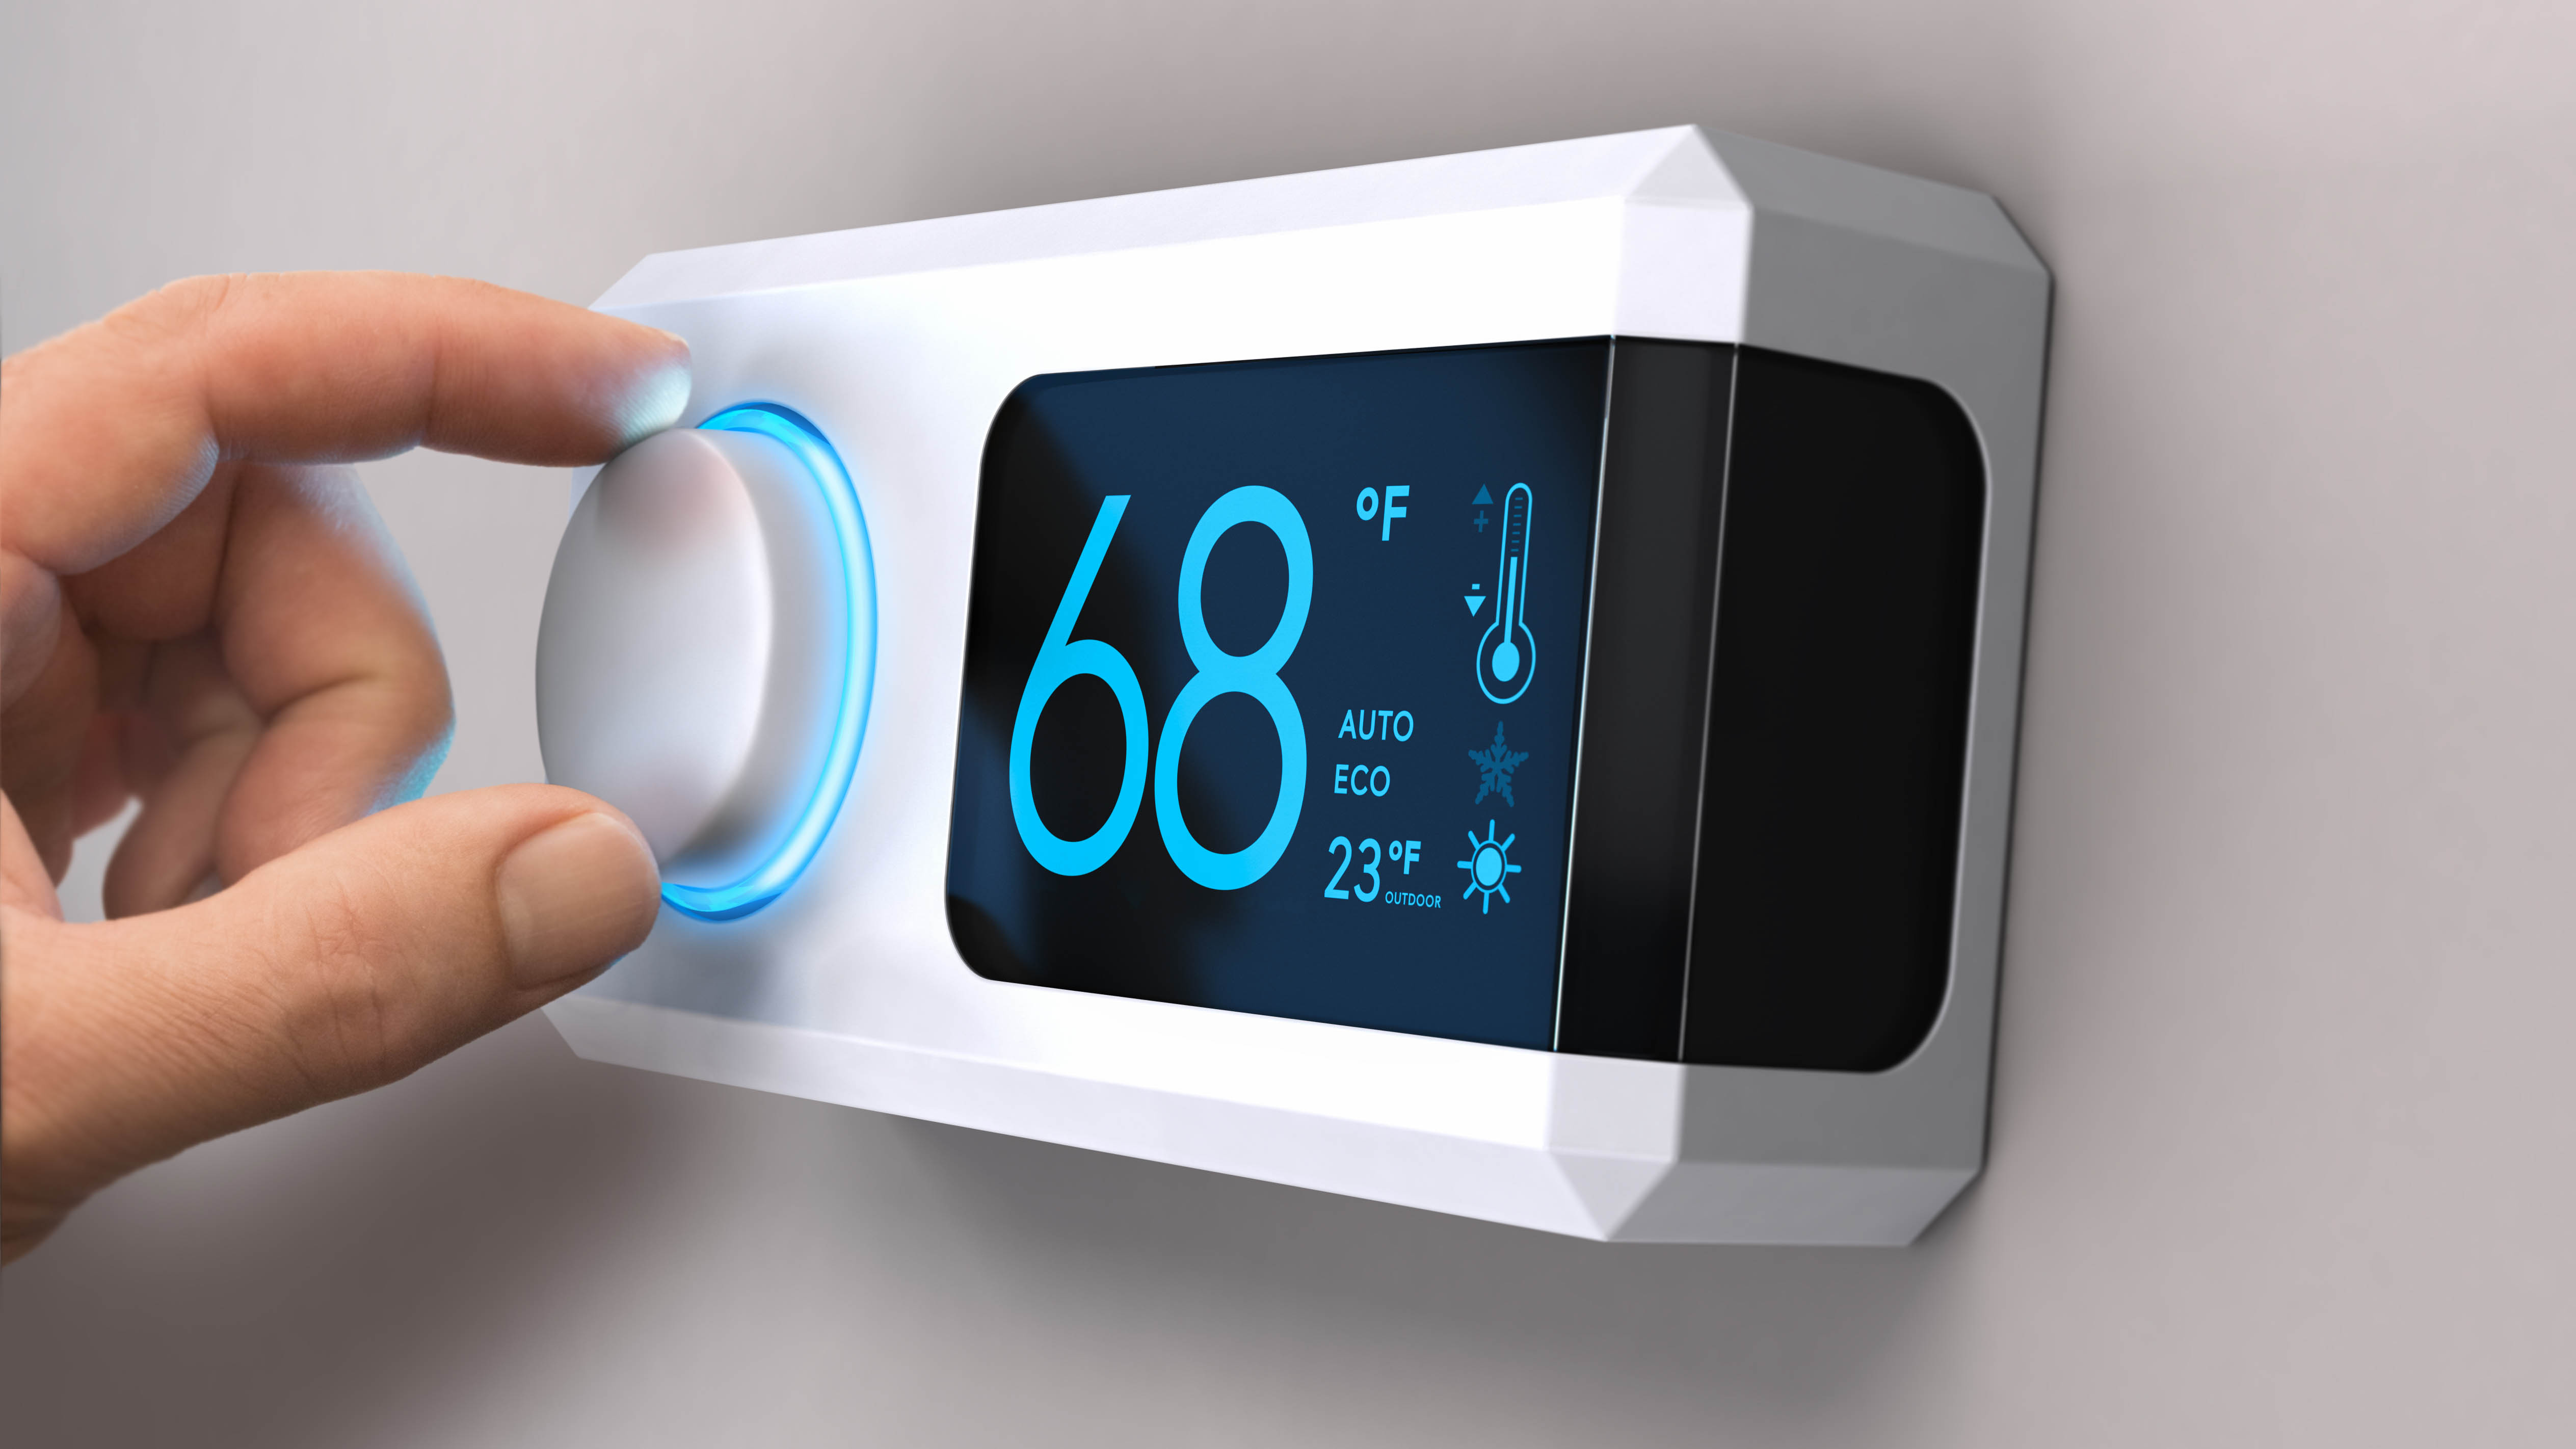 Thermostat set to 68 degrees Fahrenheit